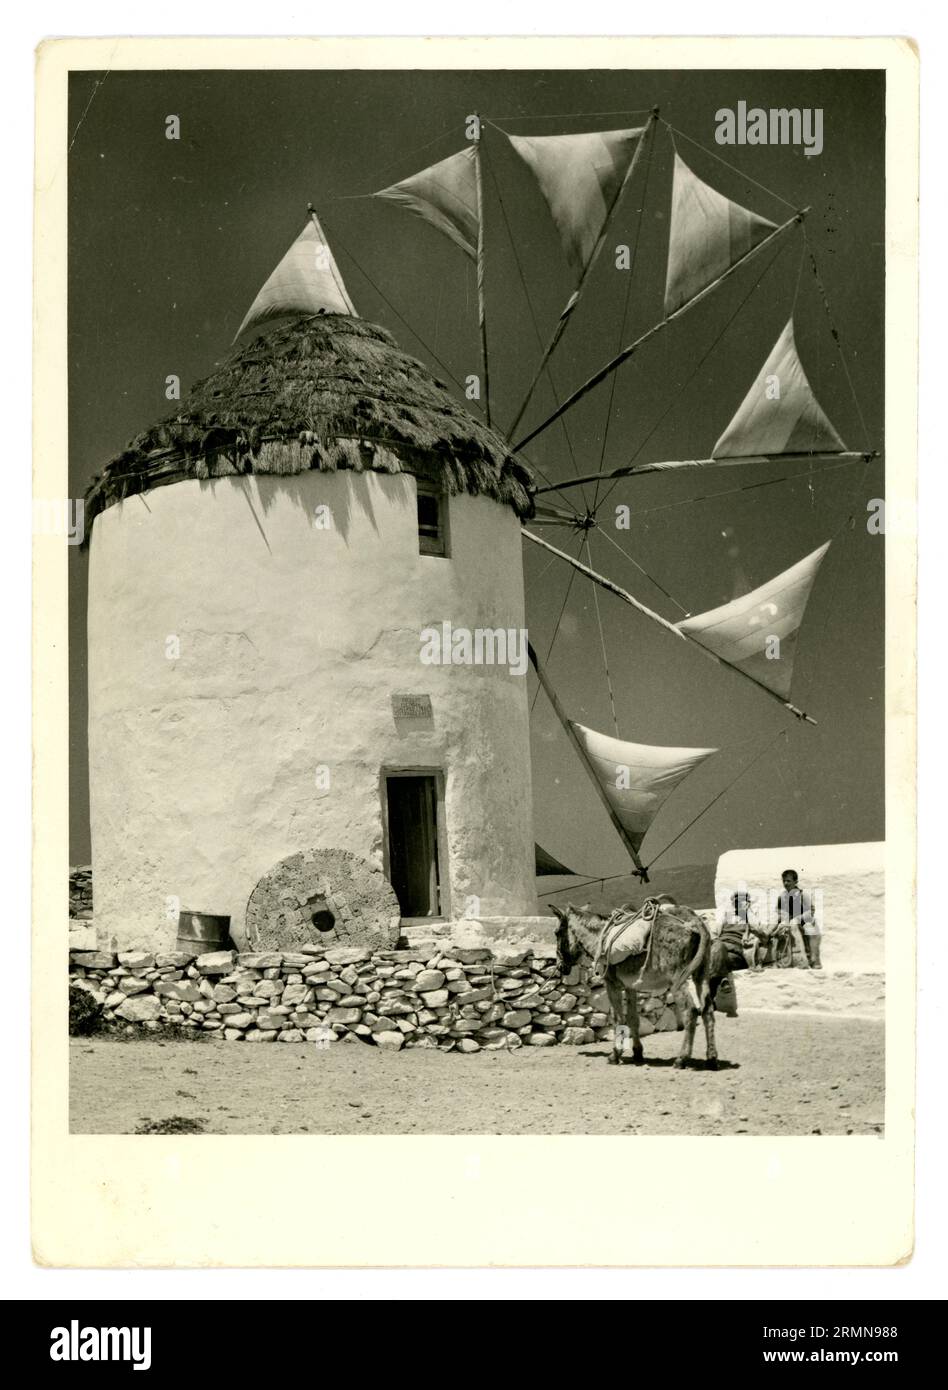 Original de la fin des années 1950, early1960 carte postale souvenir d'un moulin à vent avec des voiles de travail, utilisé pour moudre le blé. Île grecque de Mykonos, Cyclades, Grèce, cette image montre les dernières années de travail de ce moulin à vent. Les moulins à vent sont des caractéristiques emblématiques de Mykonos. Banque D'Images